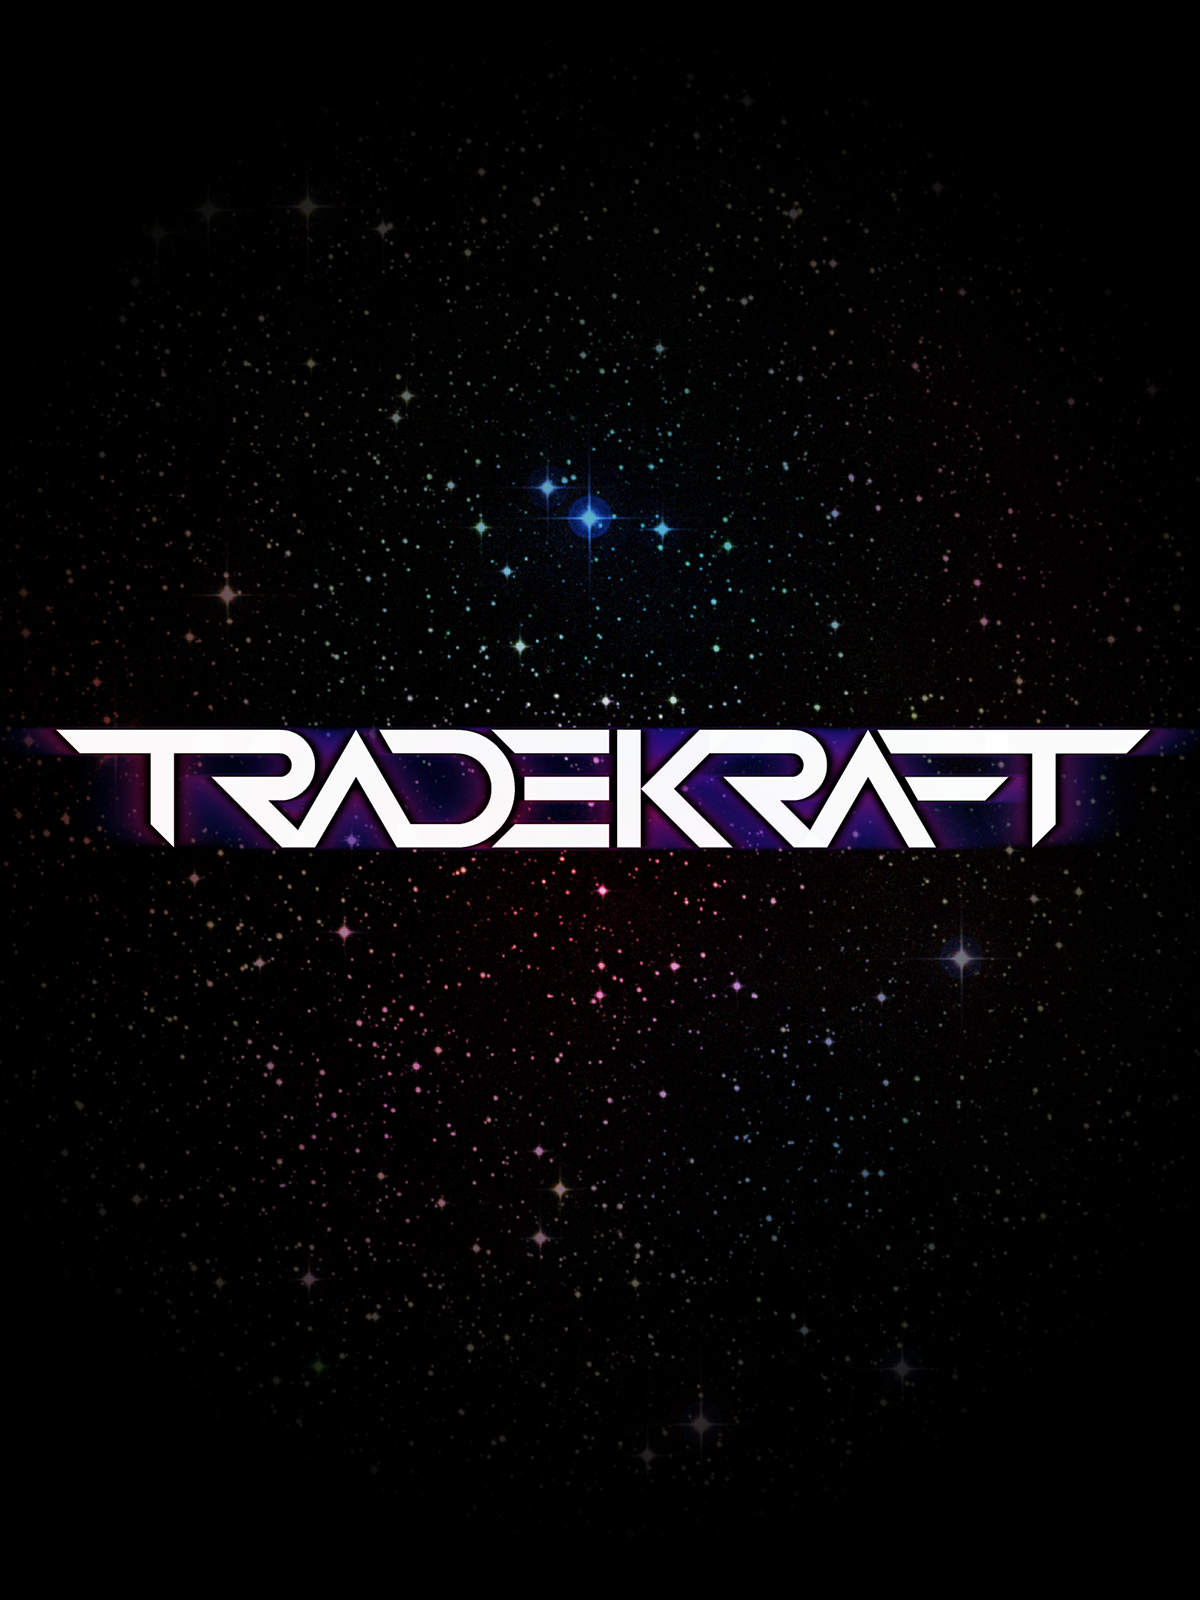 Tradekraft logo music logo